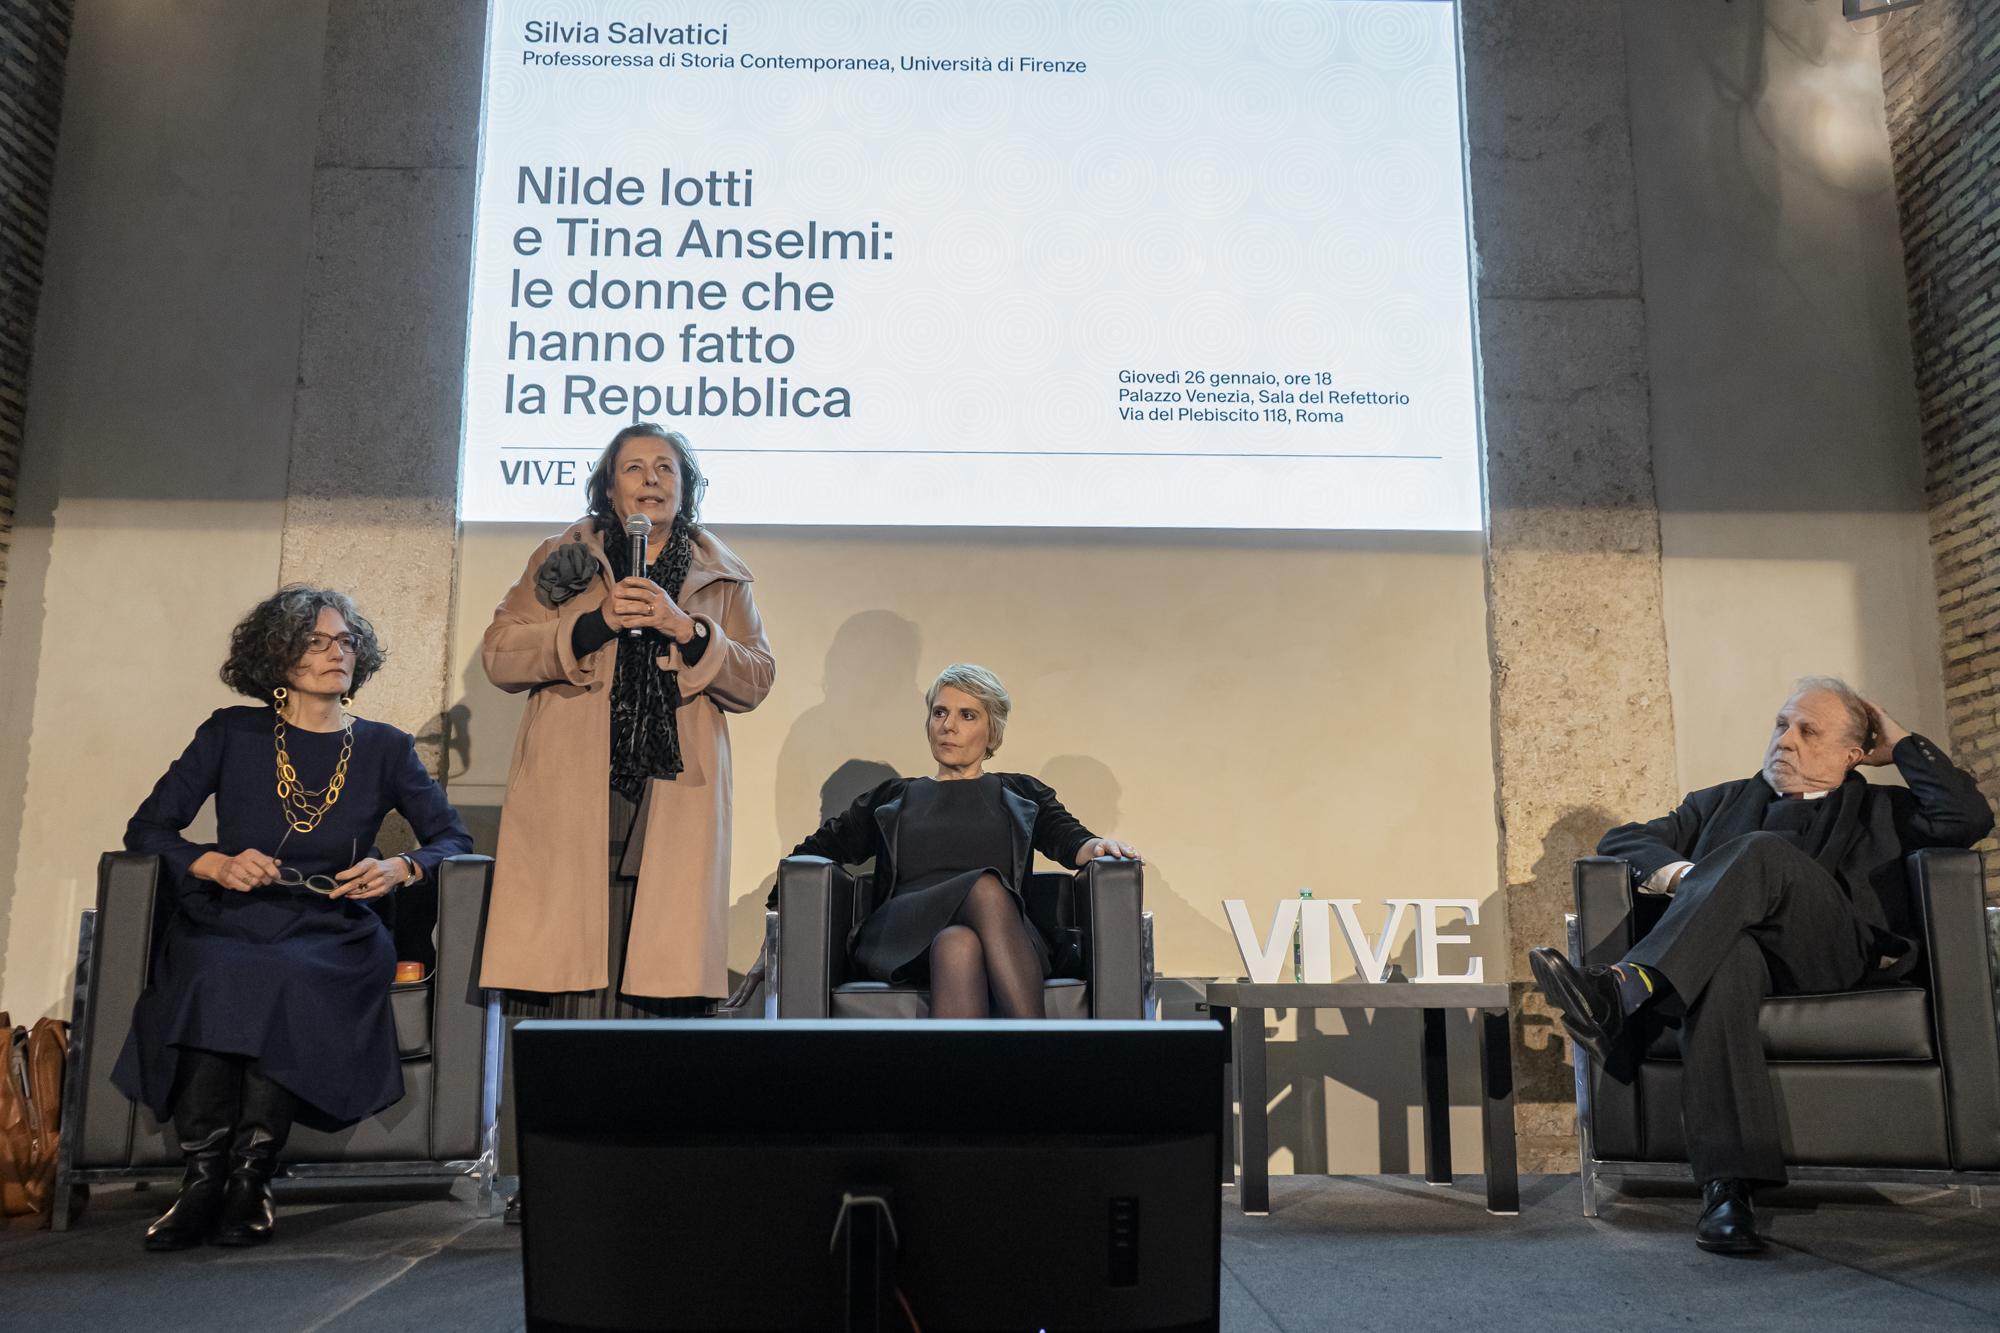 Nilde Iotti e Tina Anselmi: le donne che hanno fatto la Repubblica